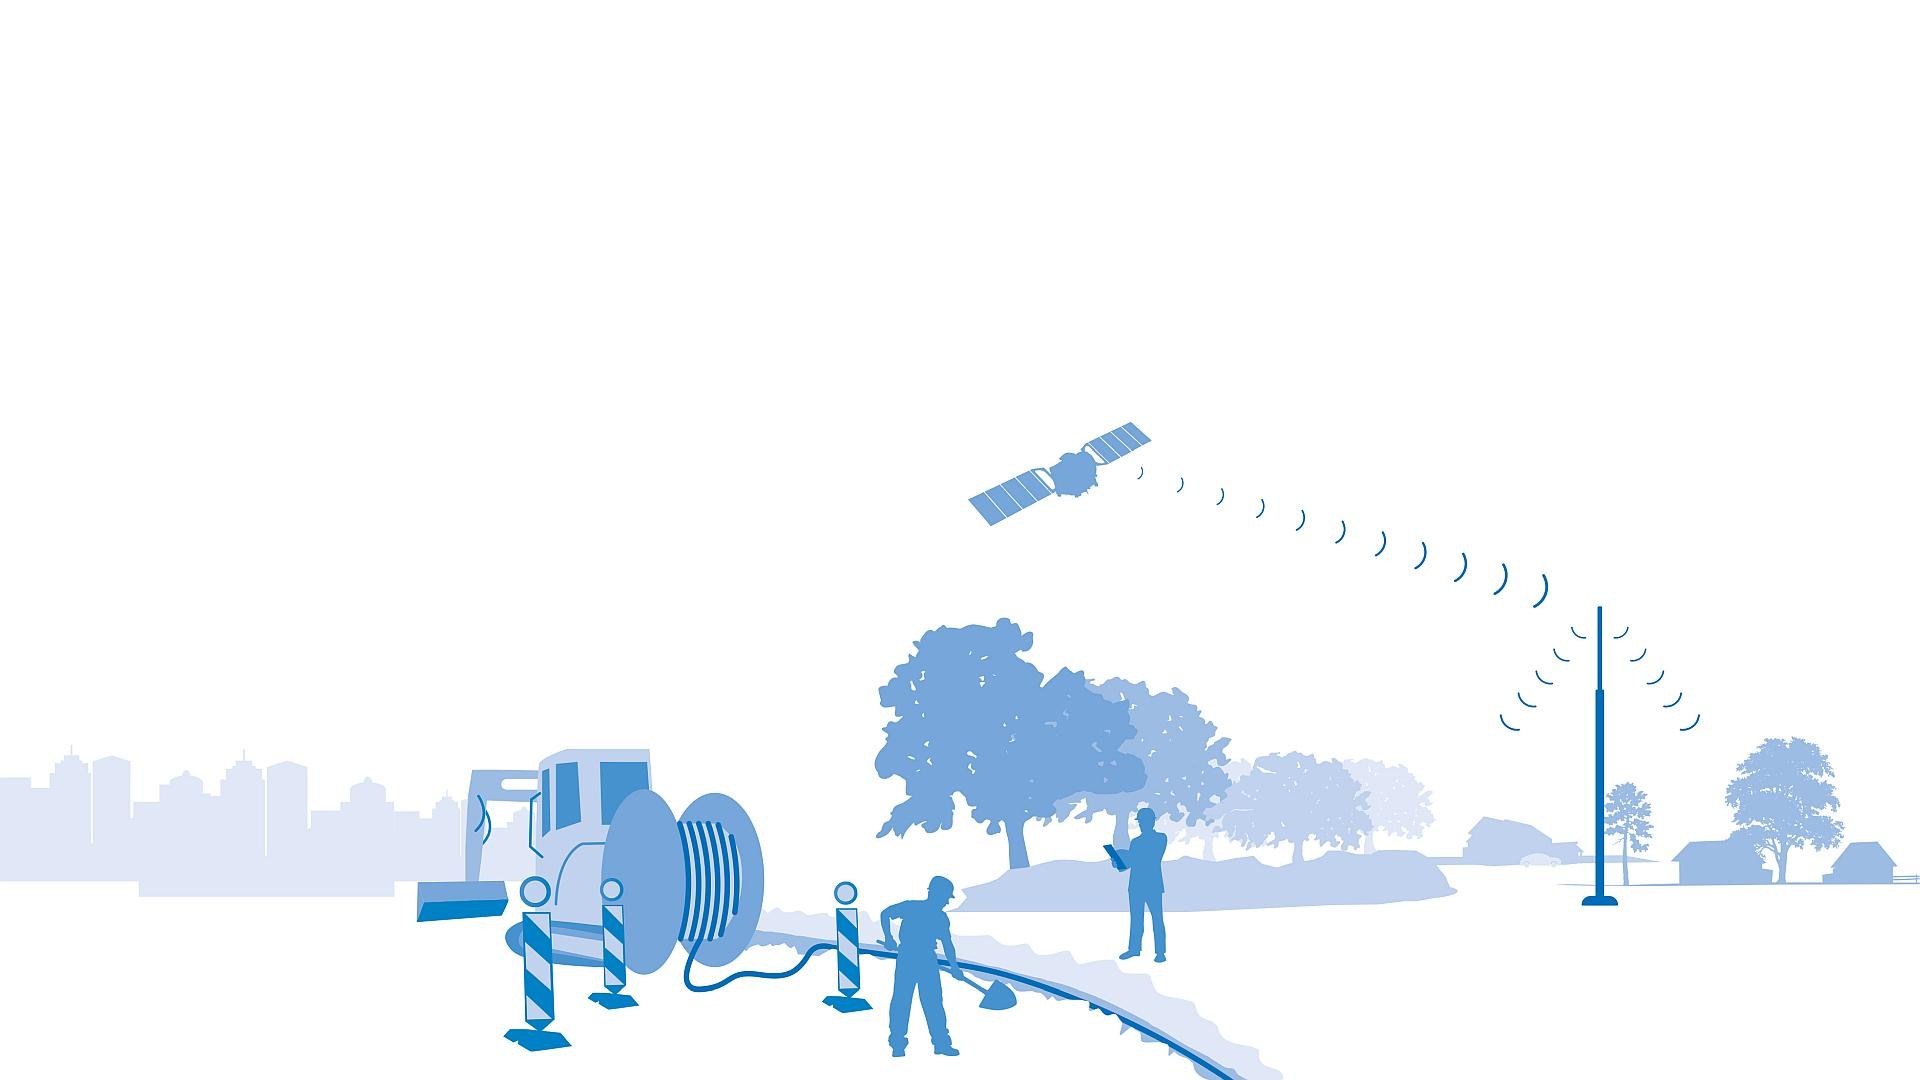 Satelliten können den Breitbandausbau unterstützen